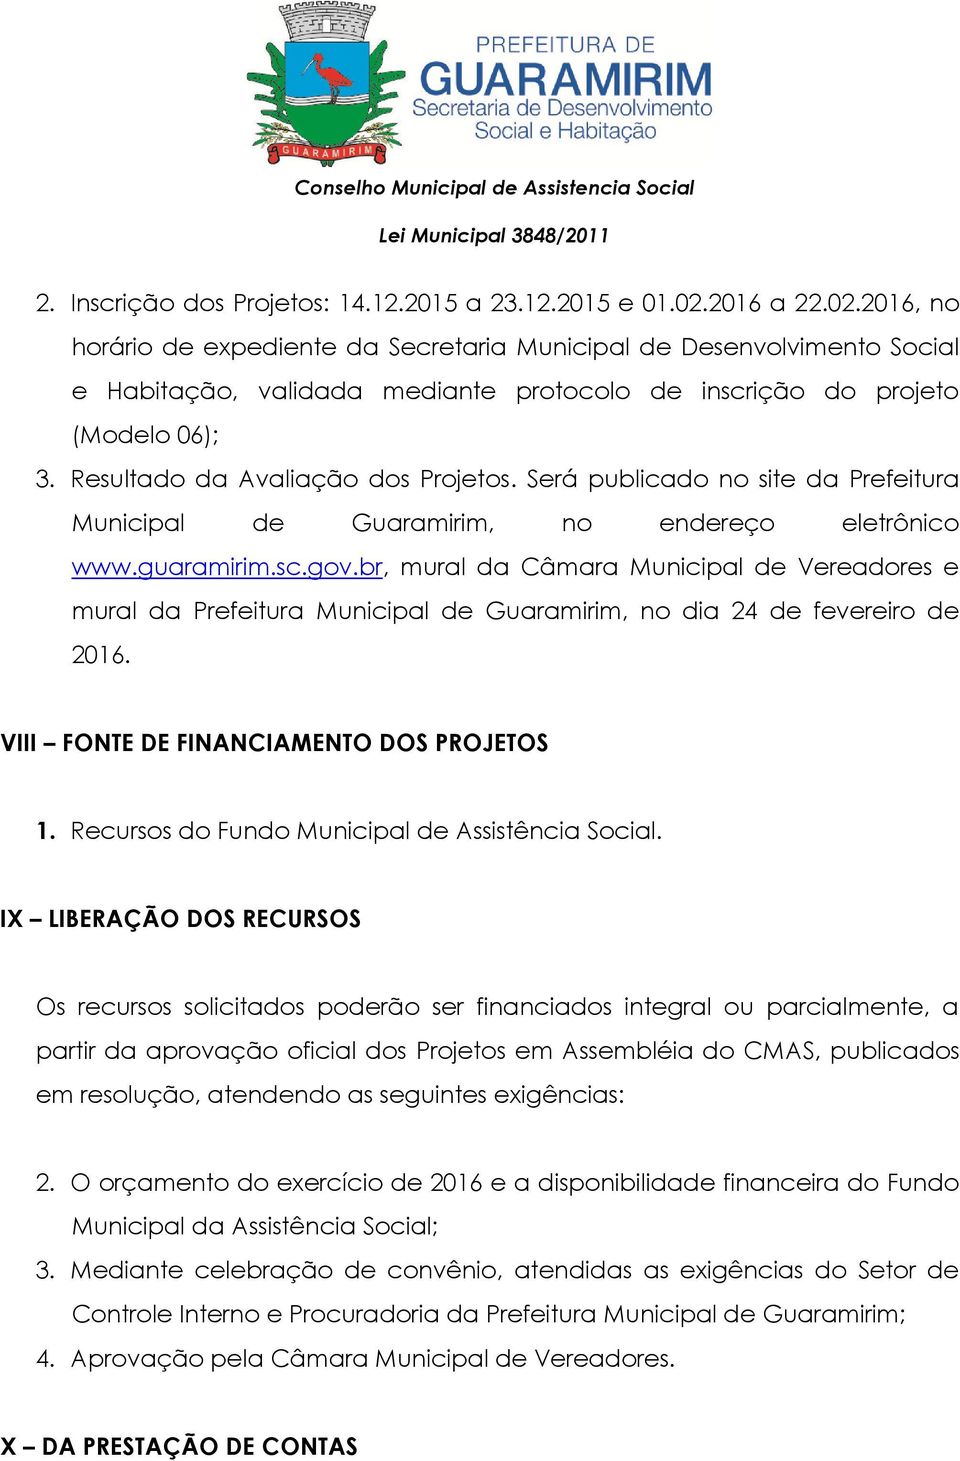 Resultado da Avaliação dos Projetos. Será publicado no site da Prefeitura Municipal de Guaramirim, no endereço eletrônico www.guaramirim.sc.gov.